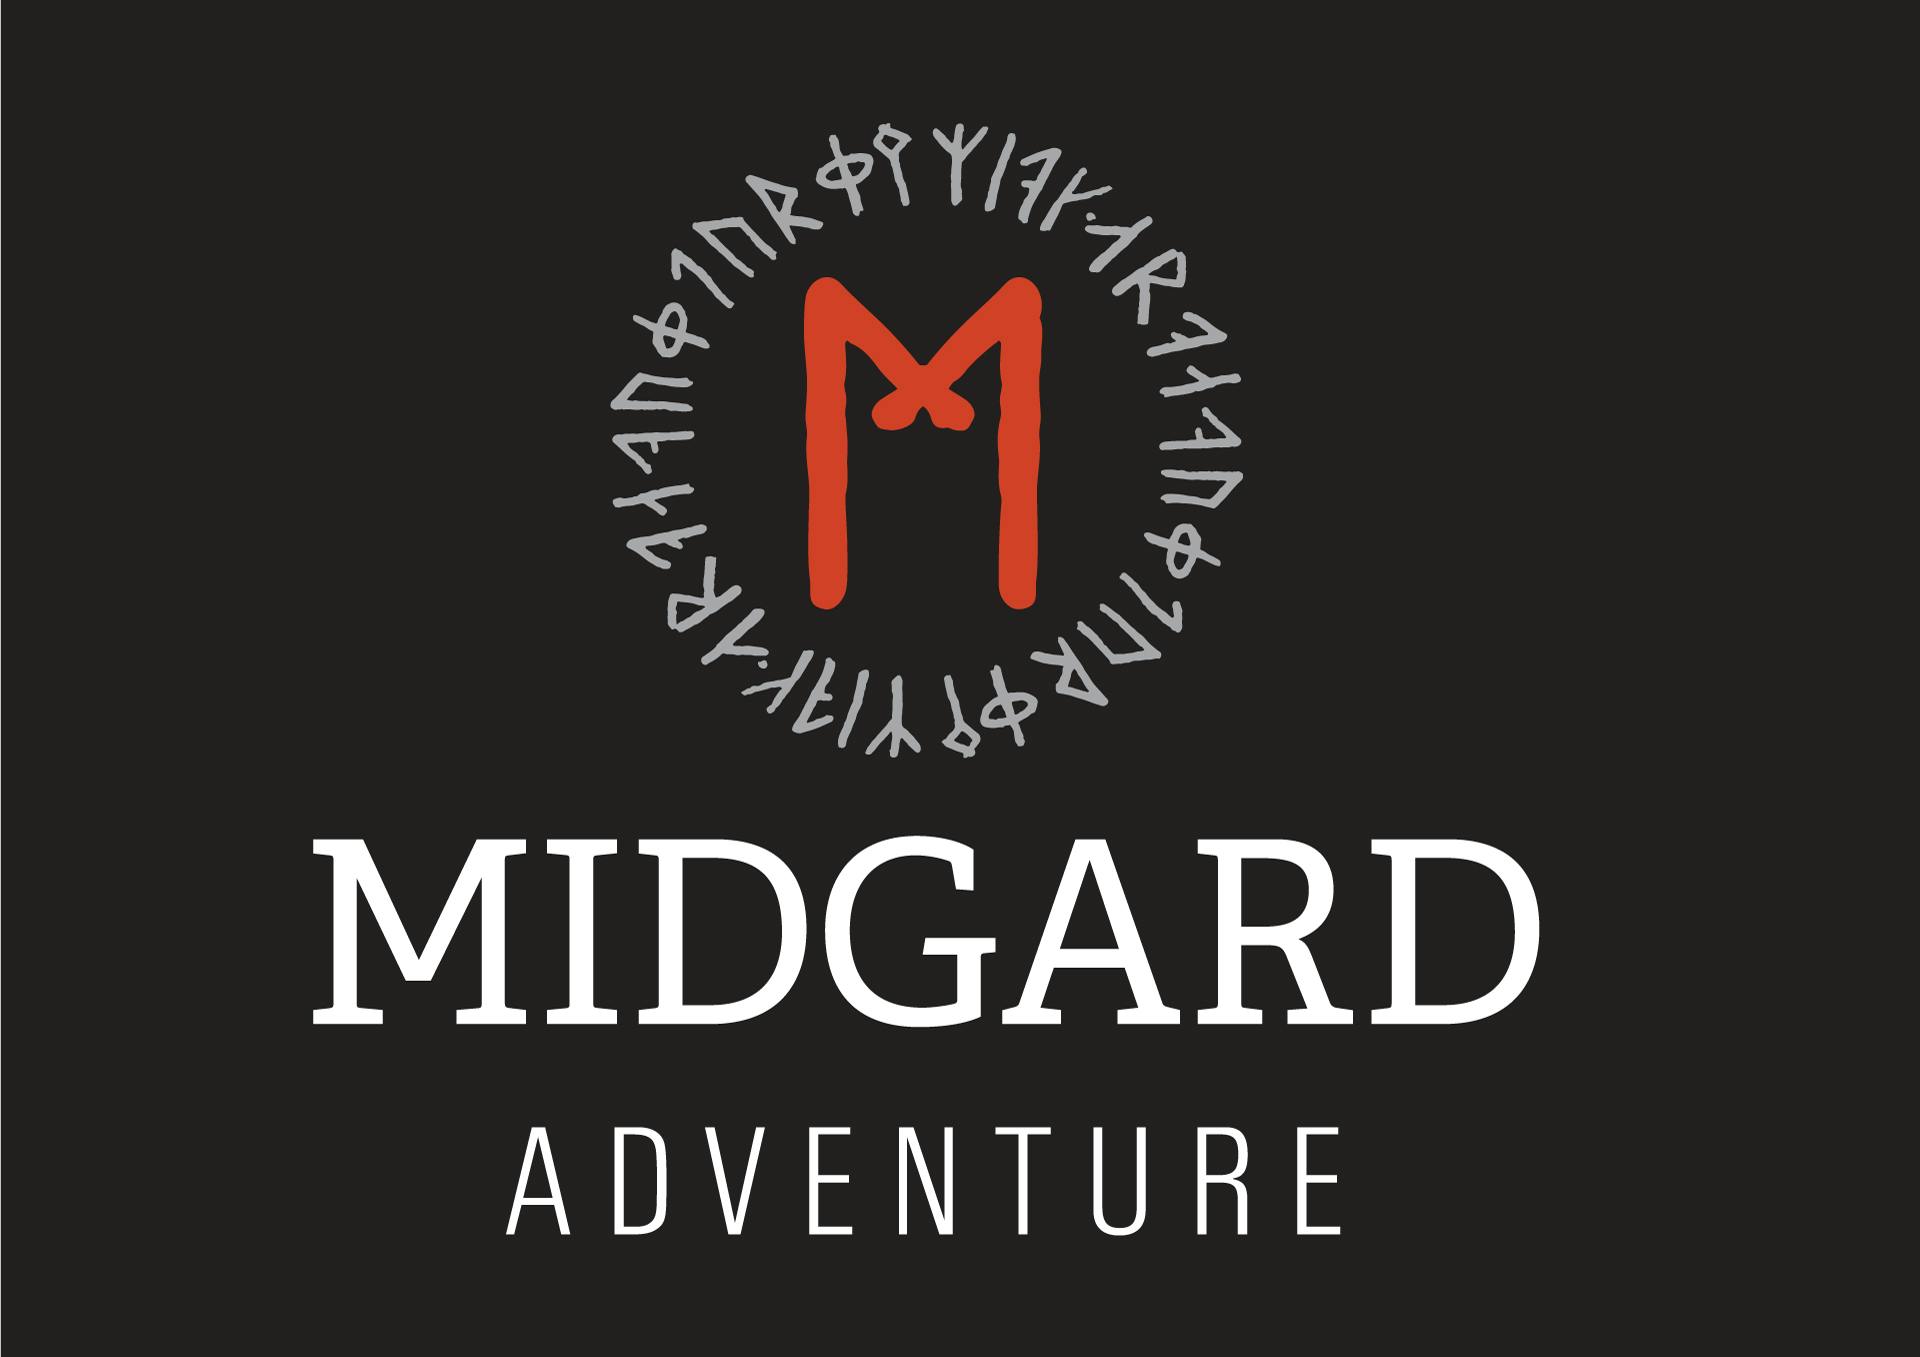 Midgard-Adventure-Square.jpg